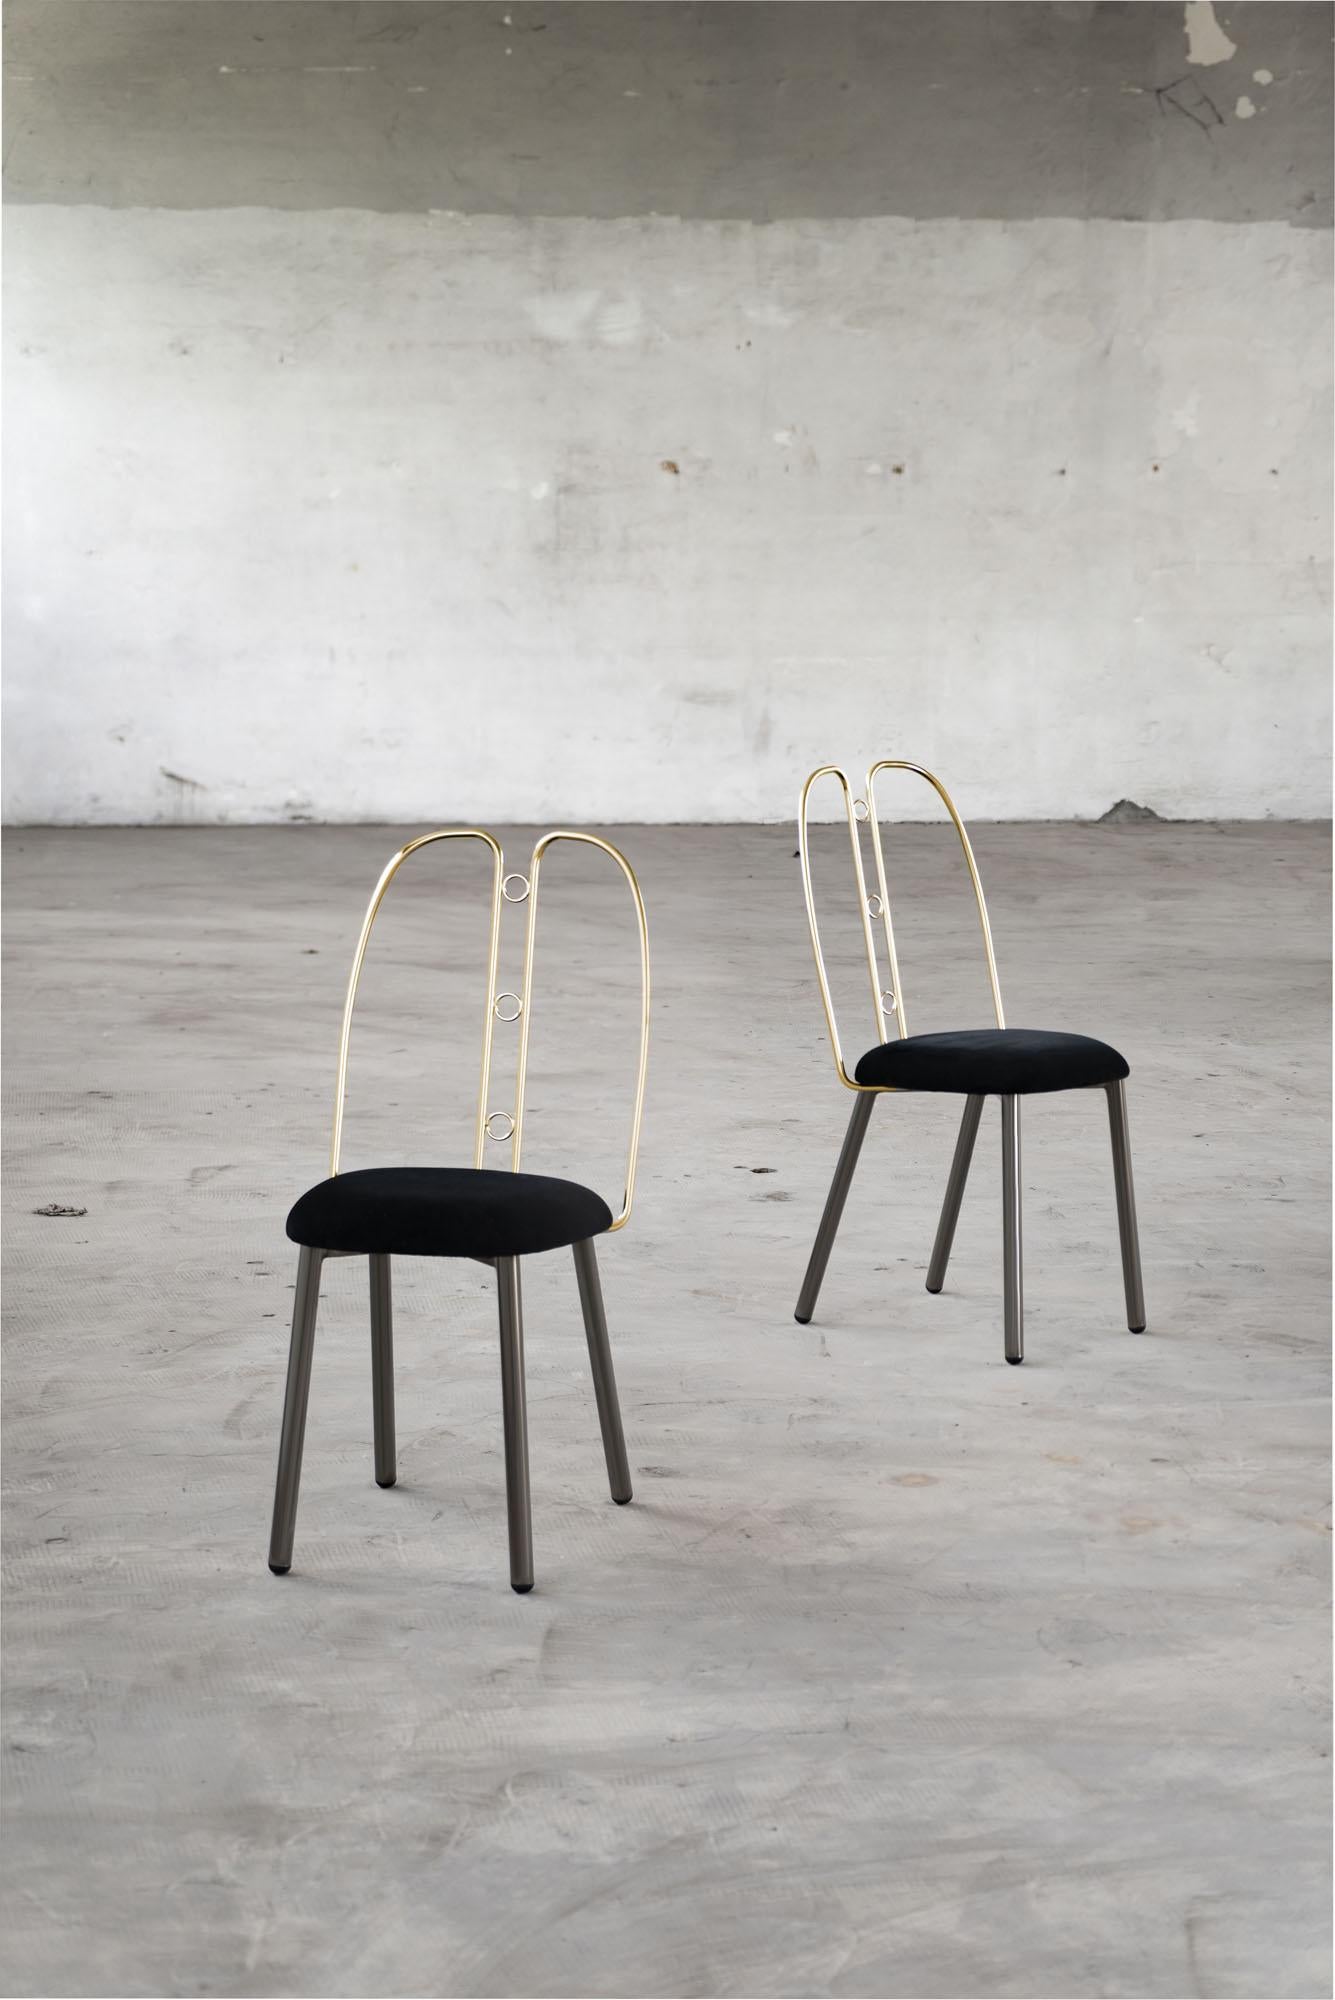 Nollie est la nouvelle chaise romantica conçue par Enrico Girotti et produite en Italie par Edizioni Enrico Girotti,  Inspiré par Josef Hoffmann.
La forme douce de l'assise haute de 48 cm relie le design des pieds en métal tubulaire de grande